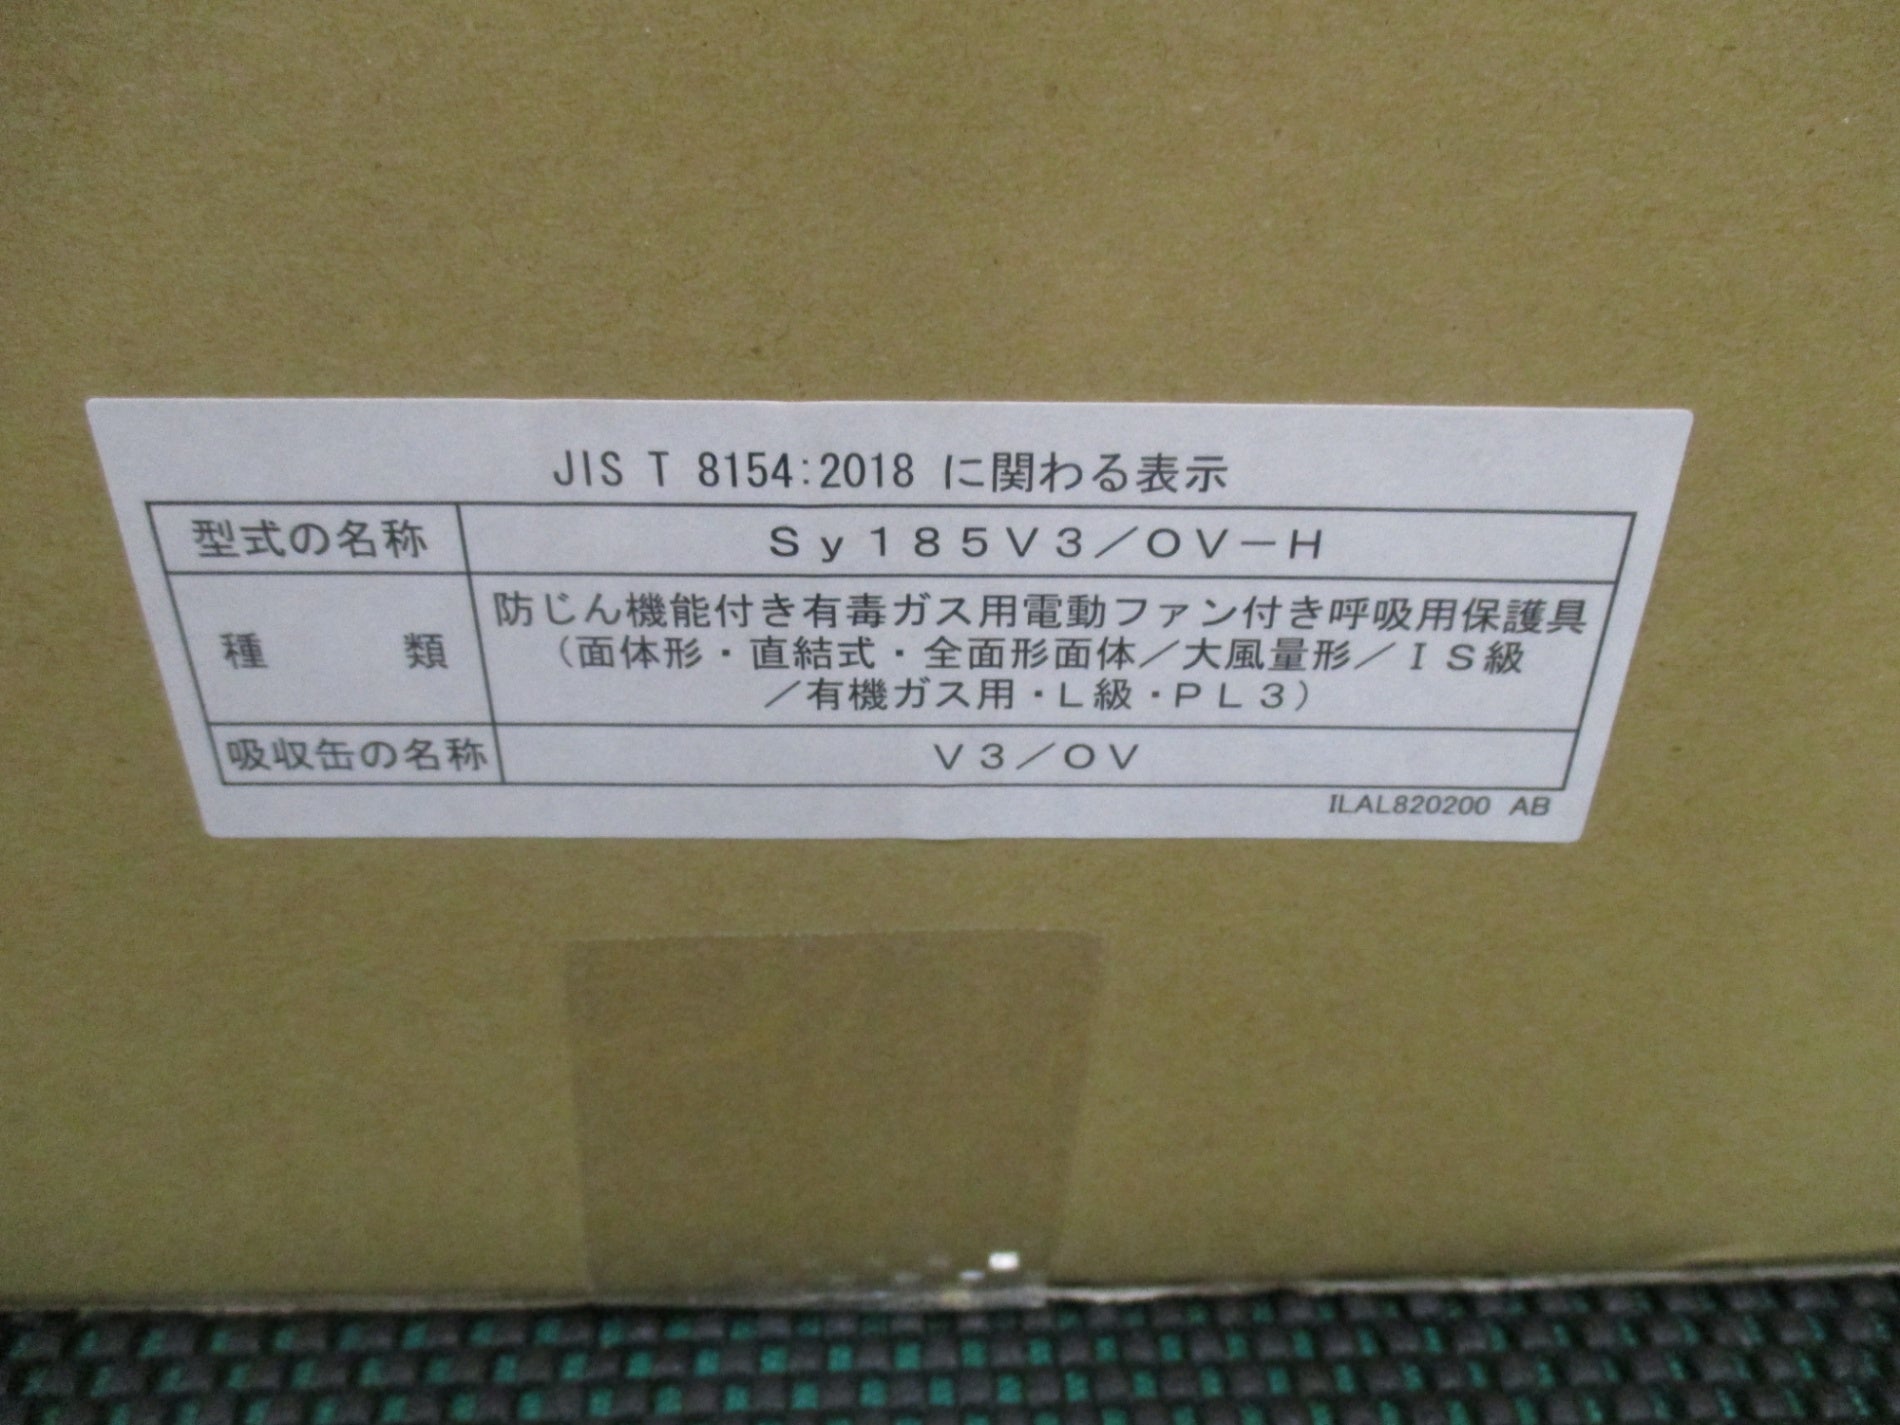 株)重松製作所 シゲマツ 電動ファン付き呼吸用保護具 Sy185-H(M) SY185